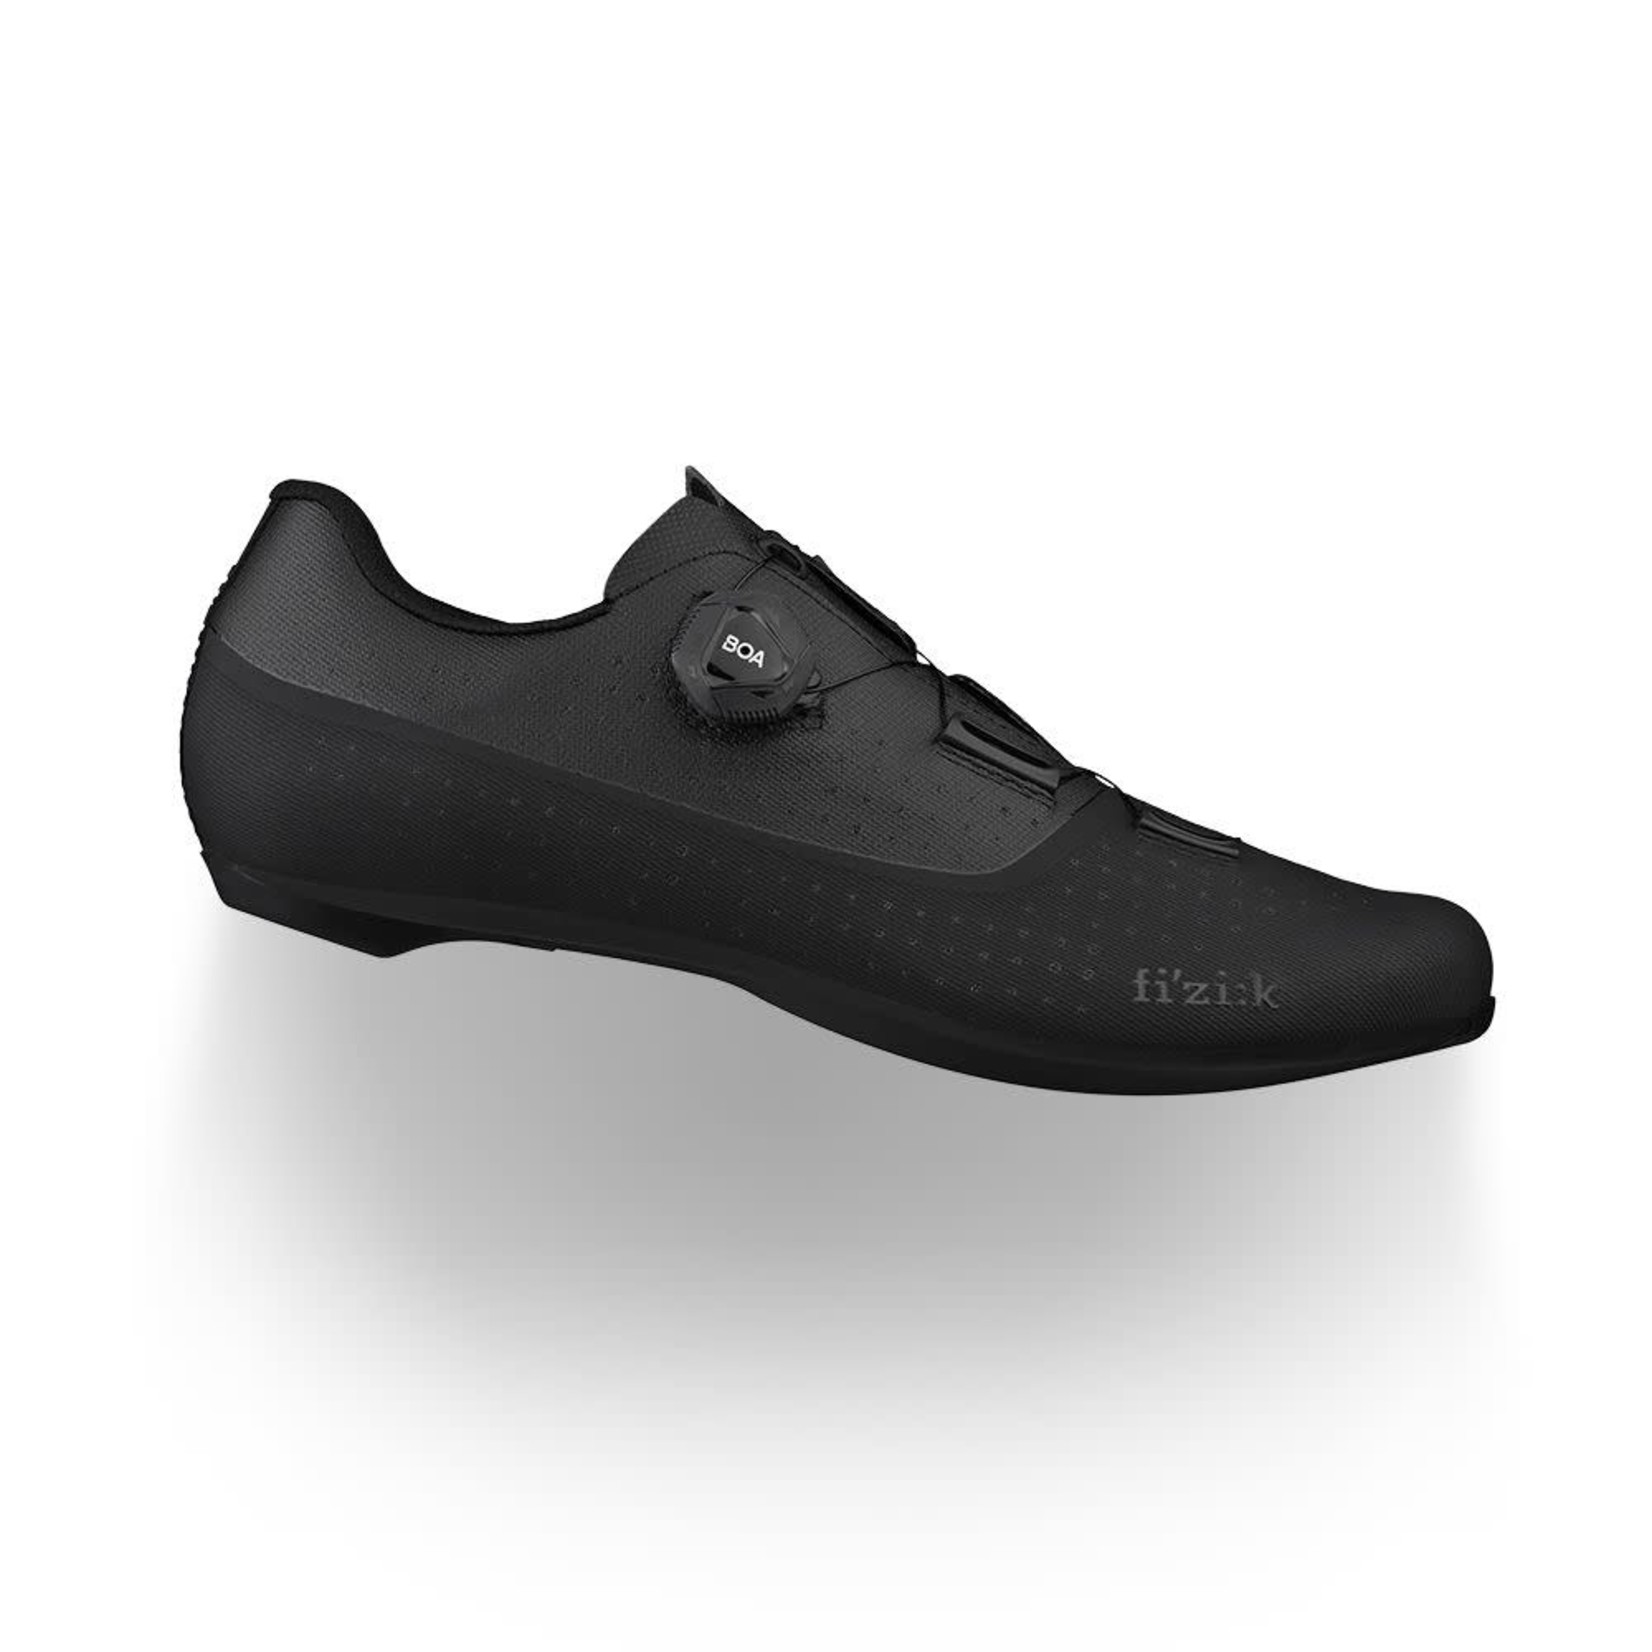 Fizik Fizik Tempo Overcurve R4 Carbon Bike/Cycling Shoes - Black/Black